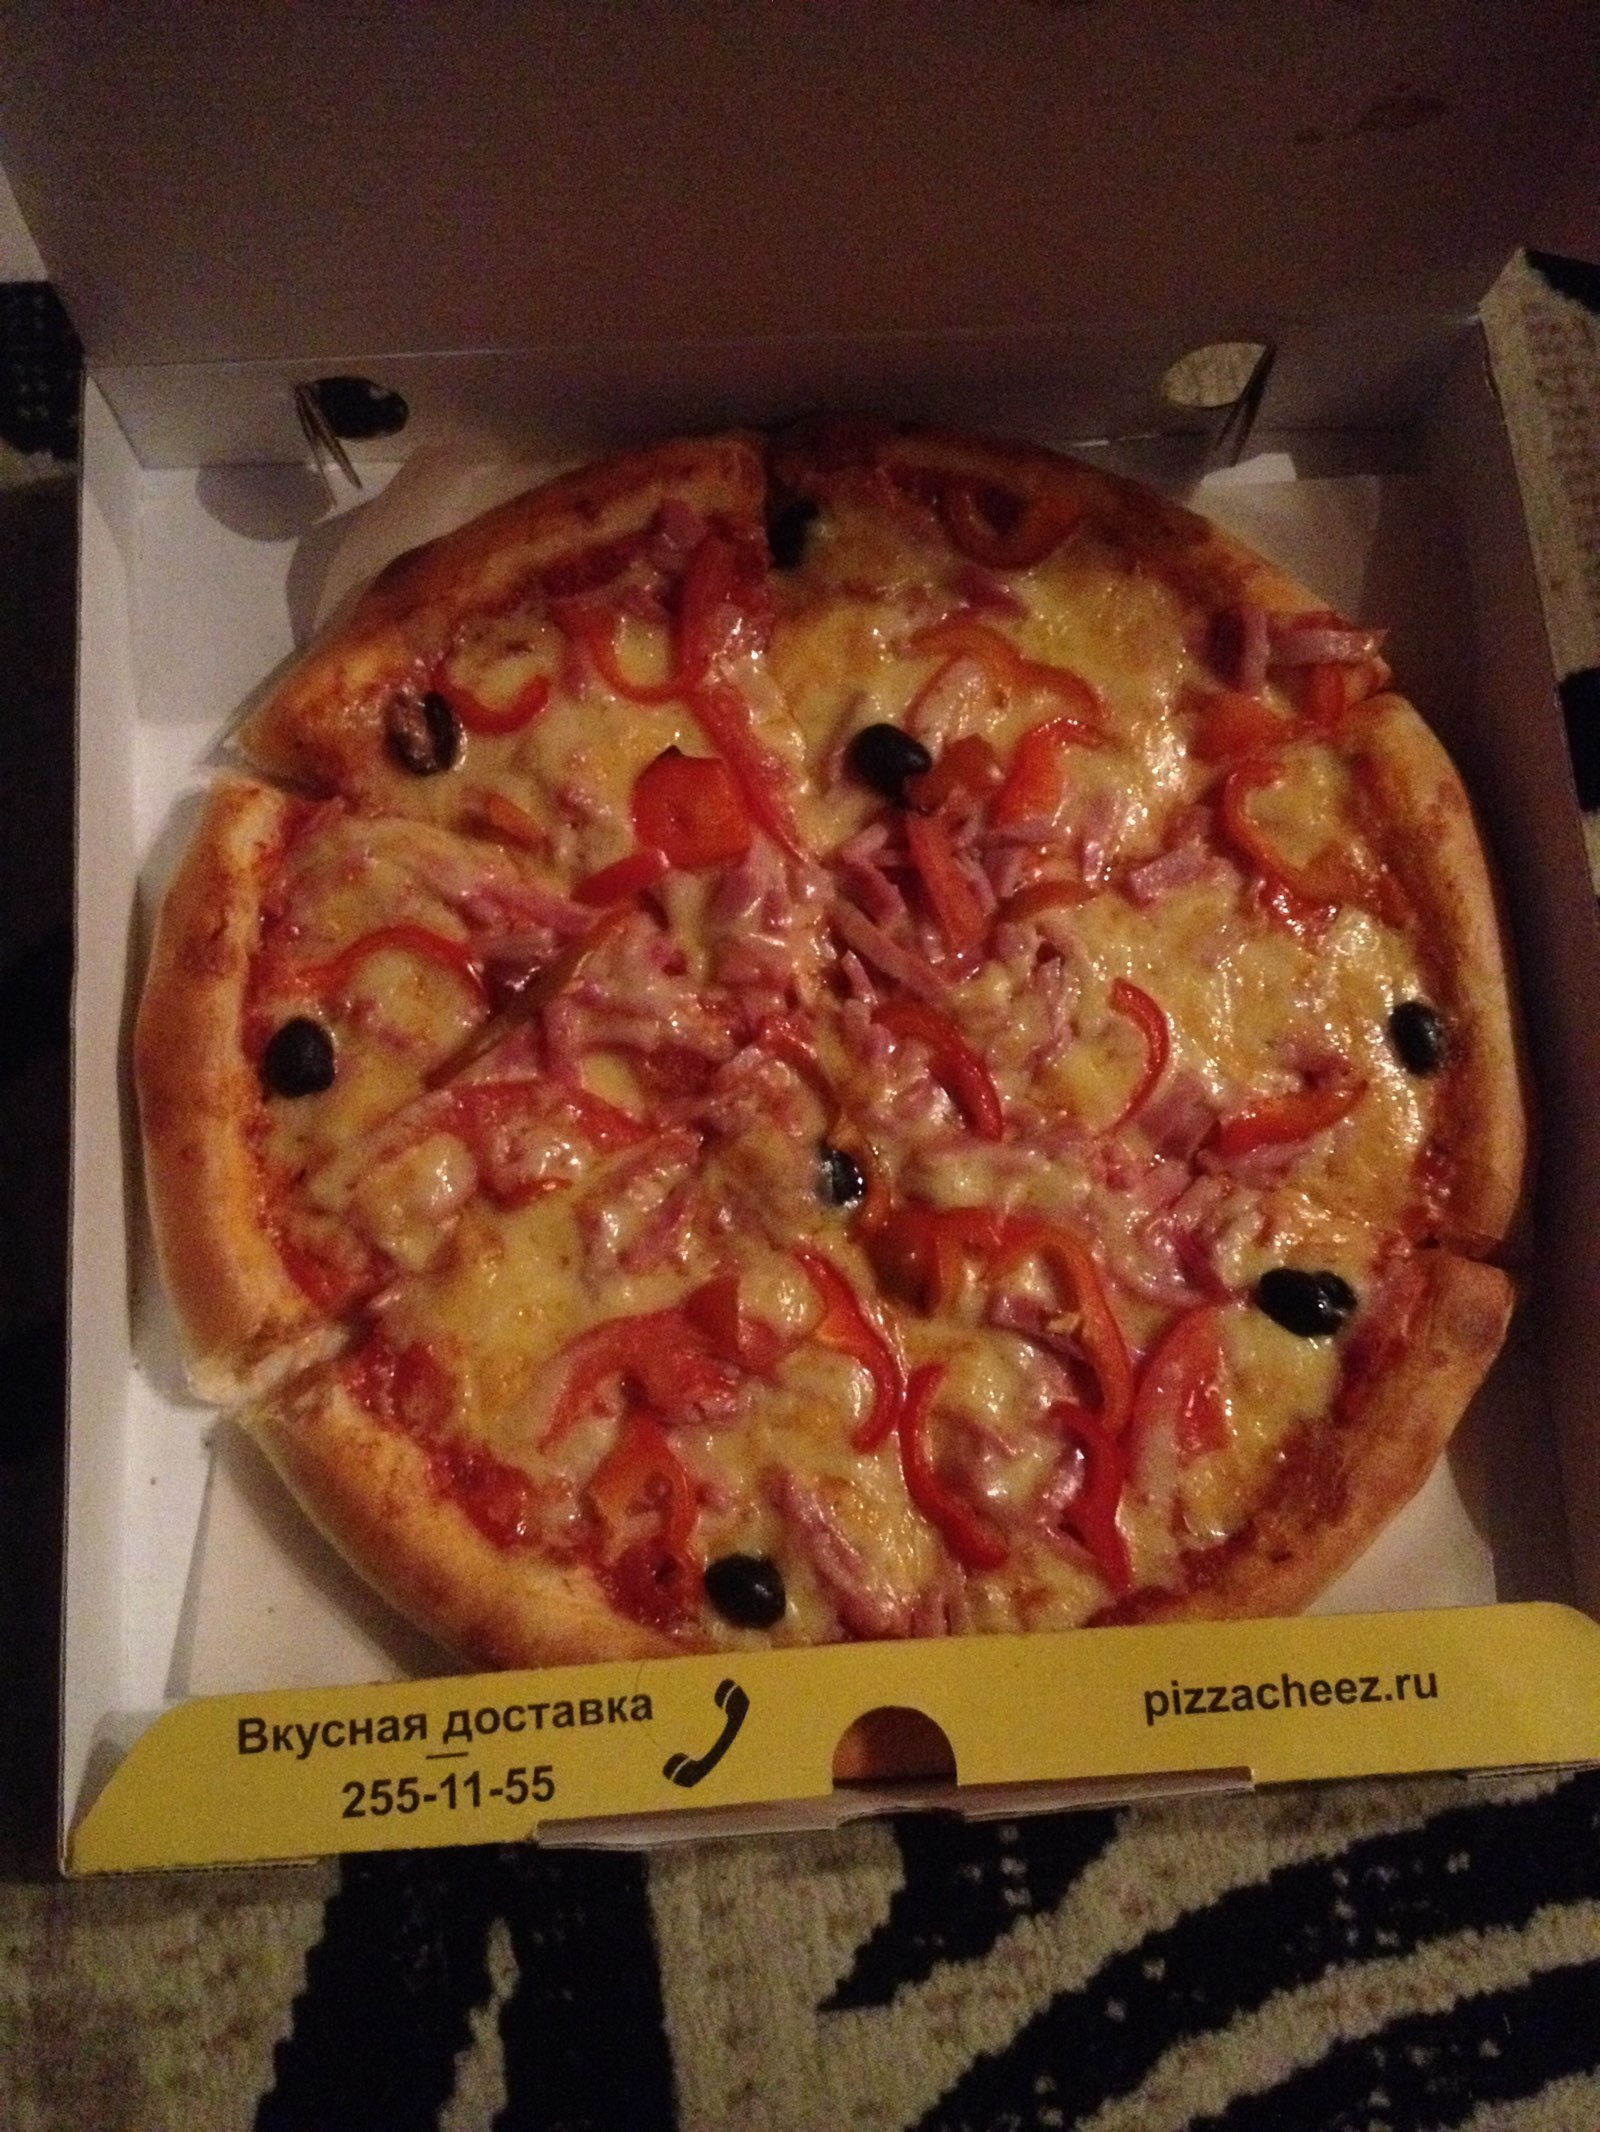 пицца лучшая в красноярске с доставкой рейтинг фото 10